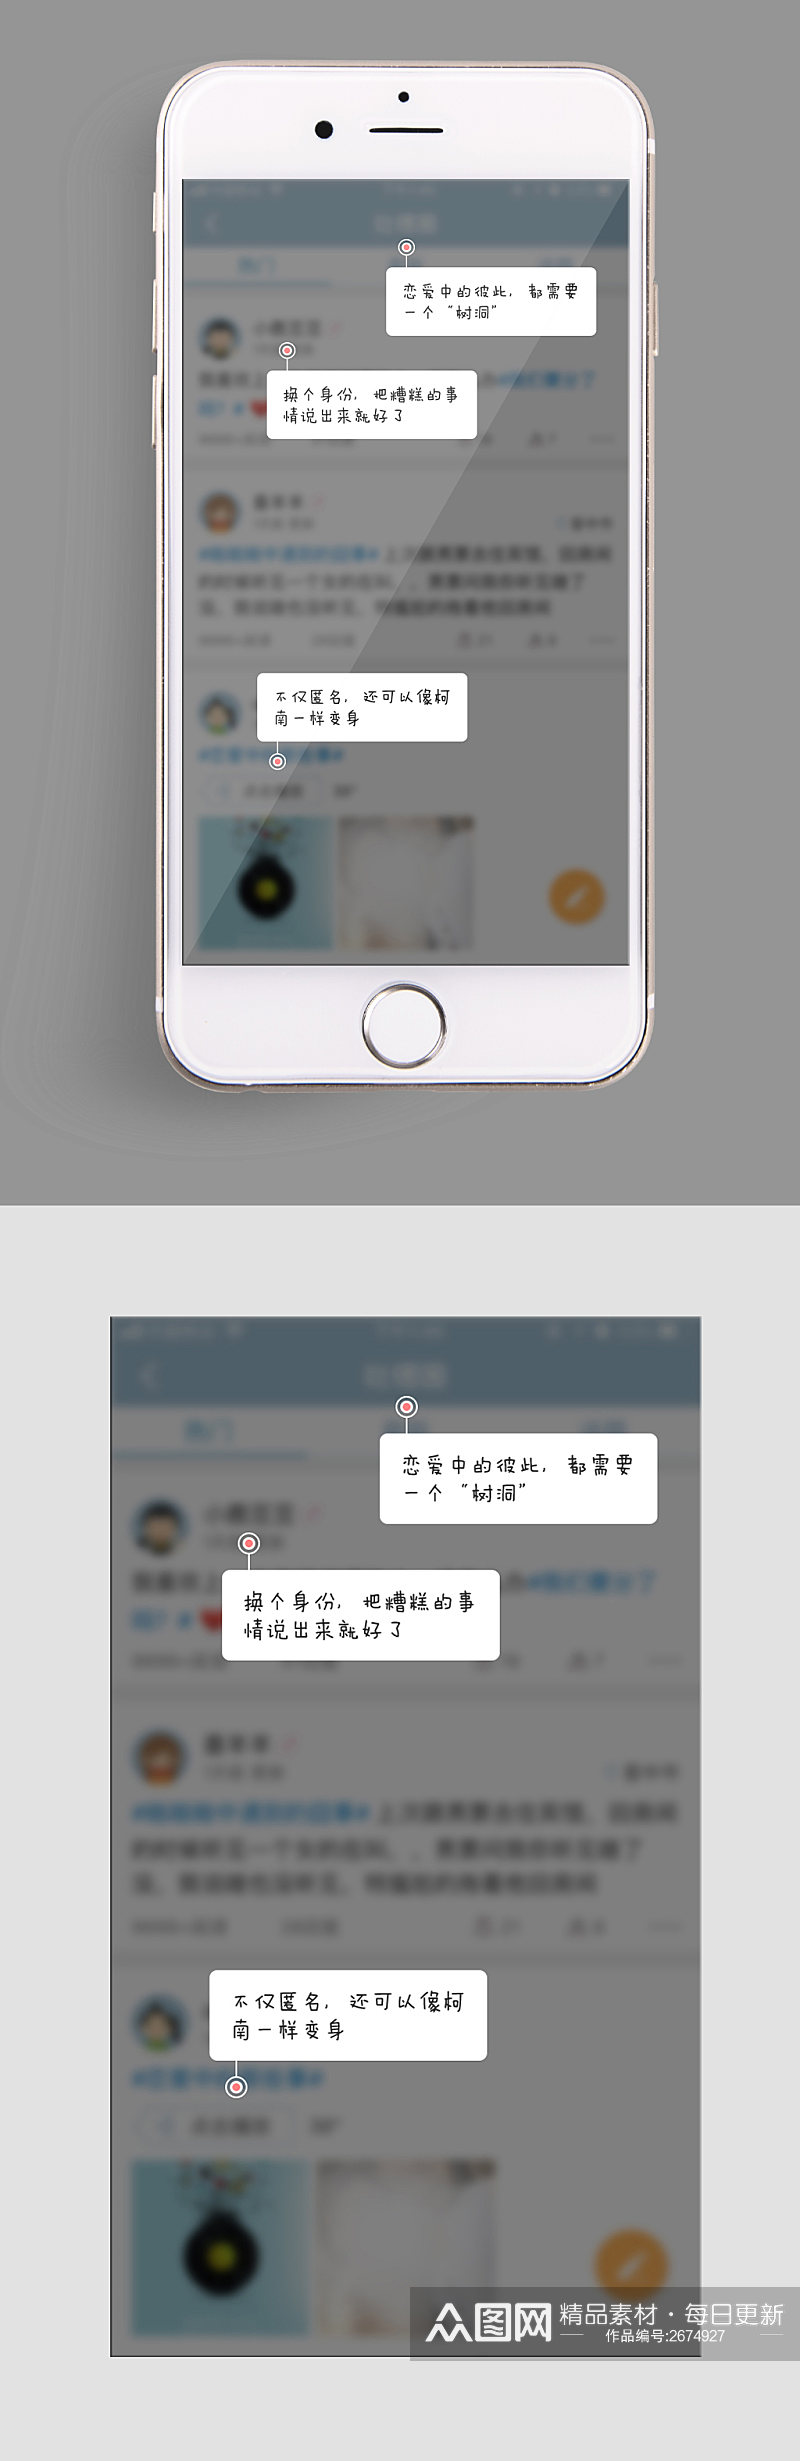 手机UIapp启动登录页面素材